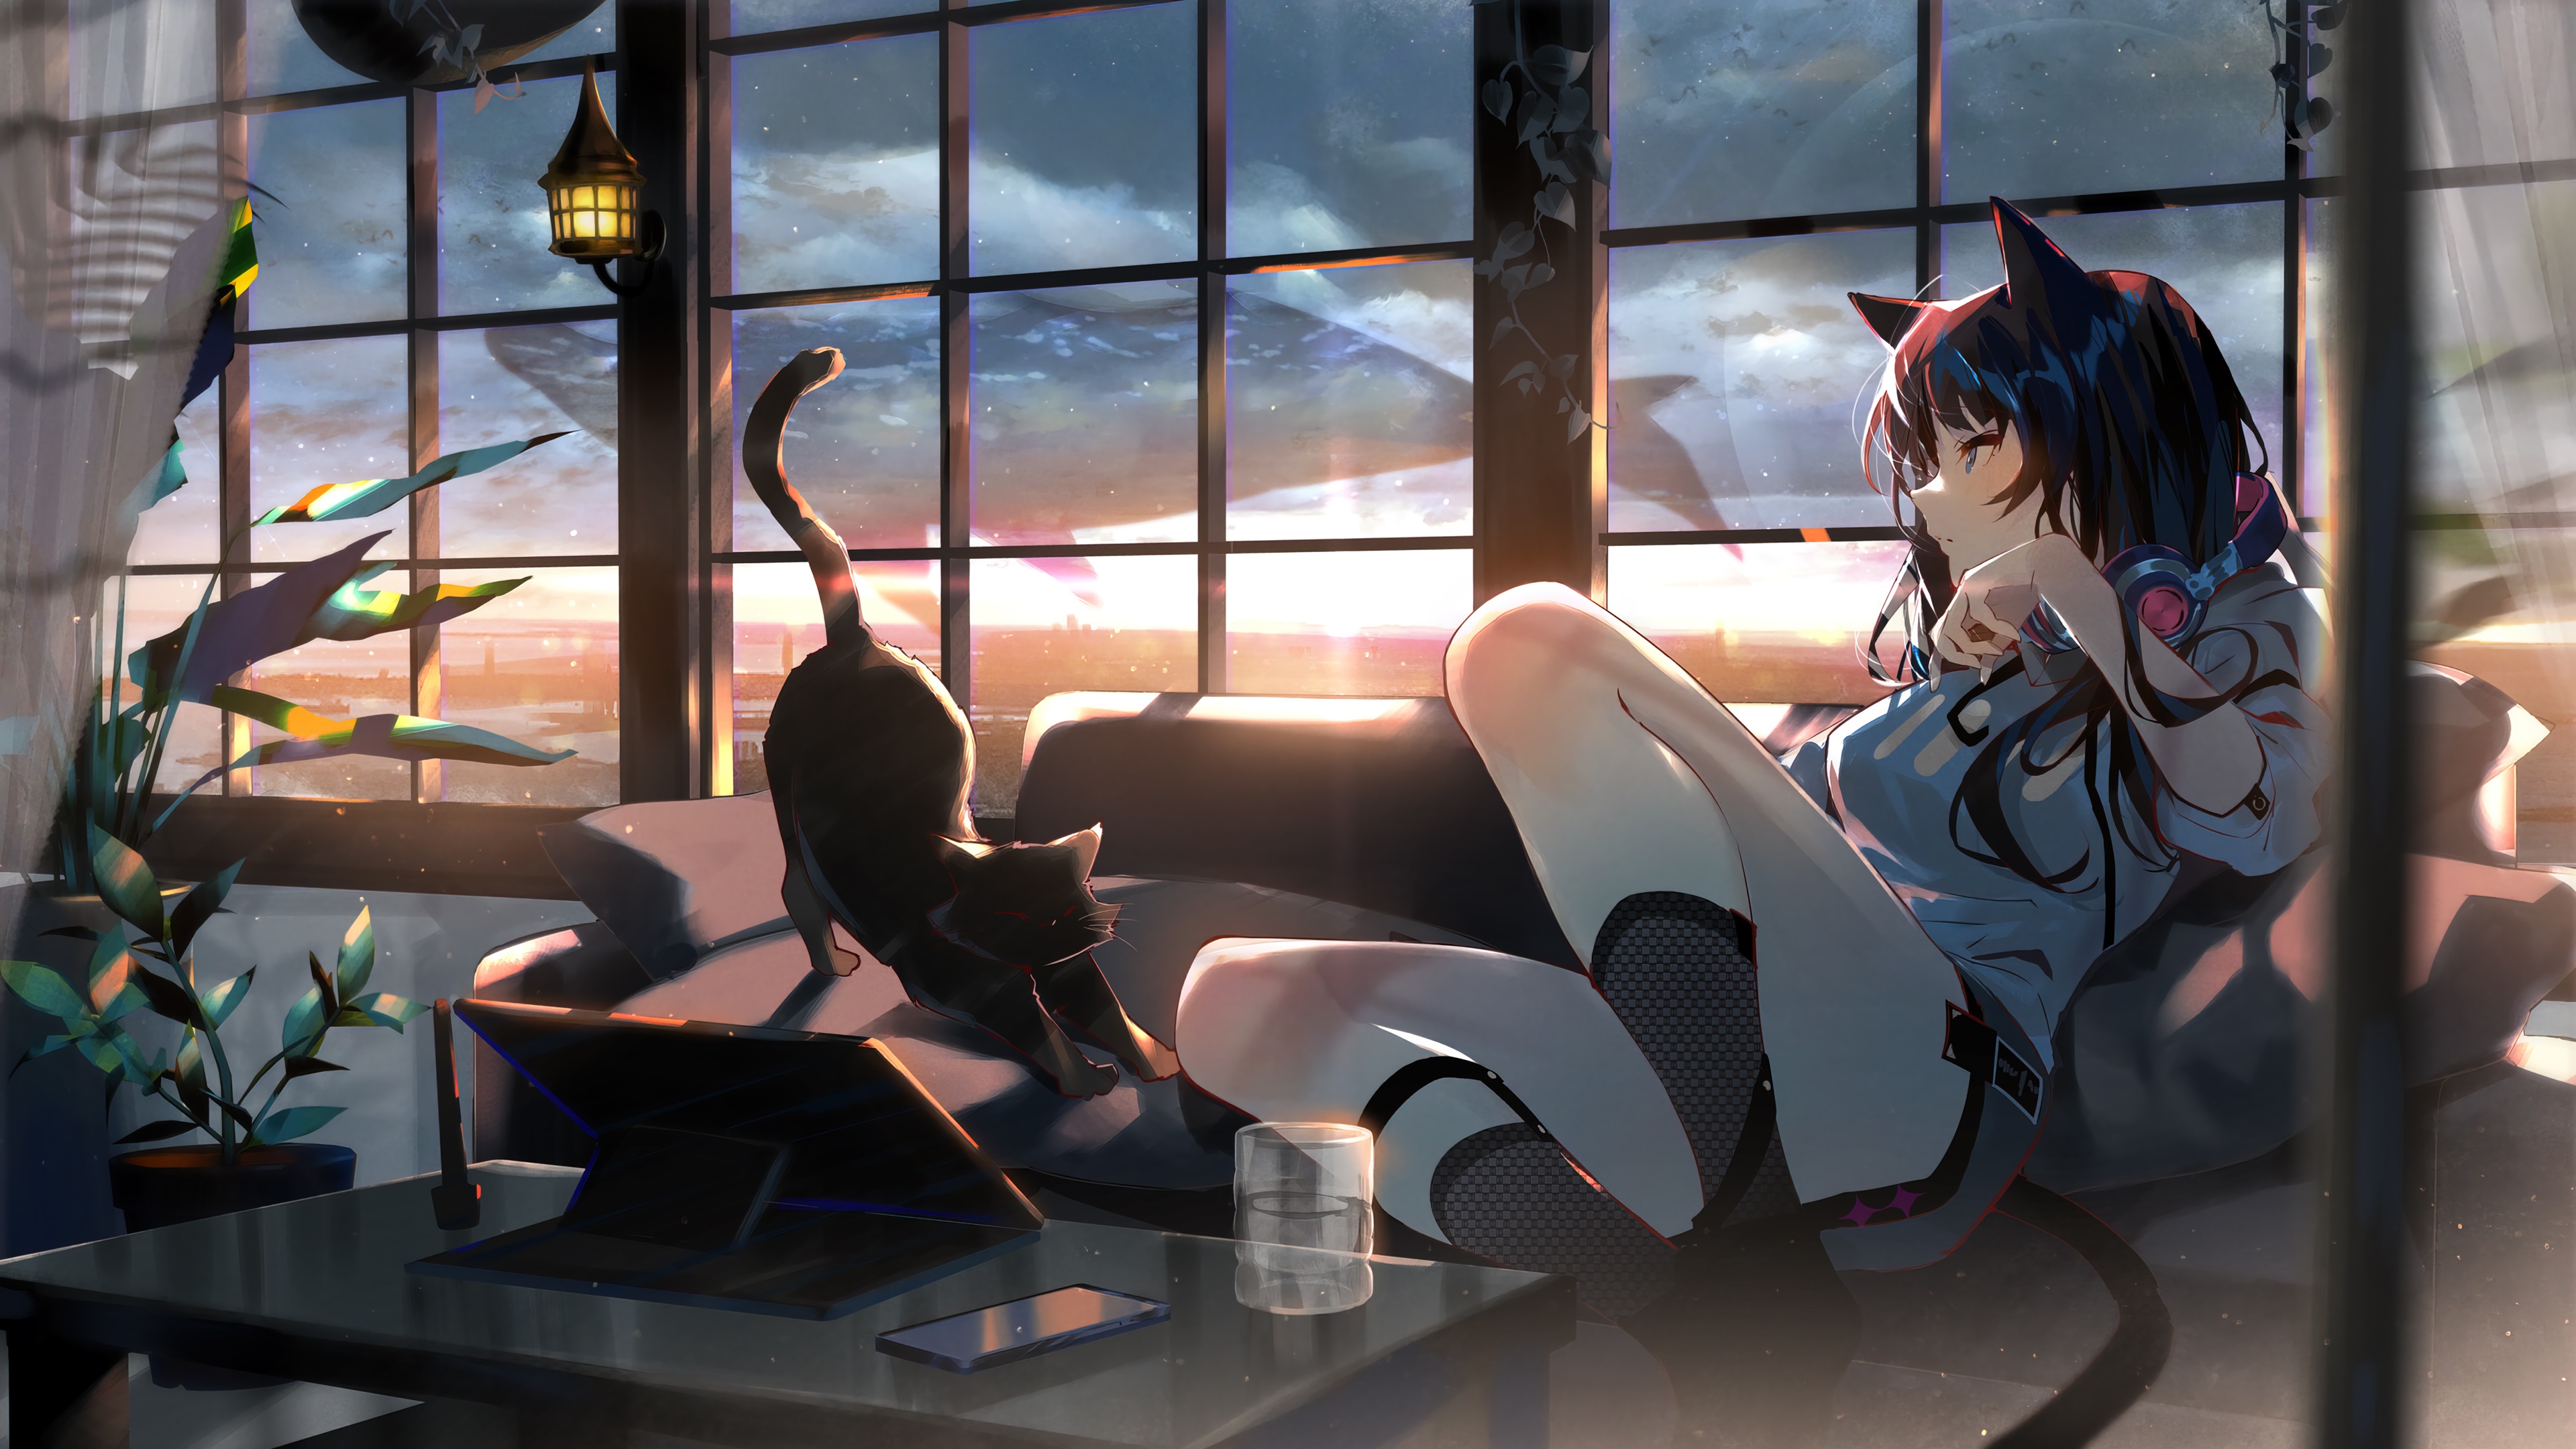 Anime Girl 4k Ultra HD Wallpaper by あるてら